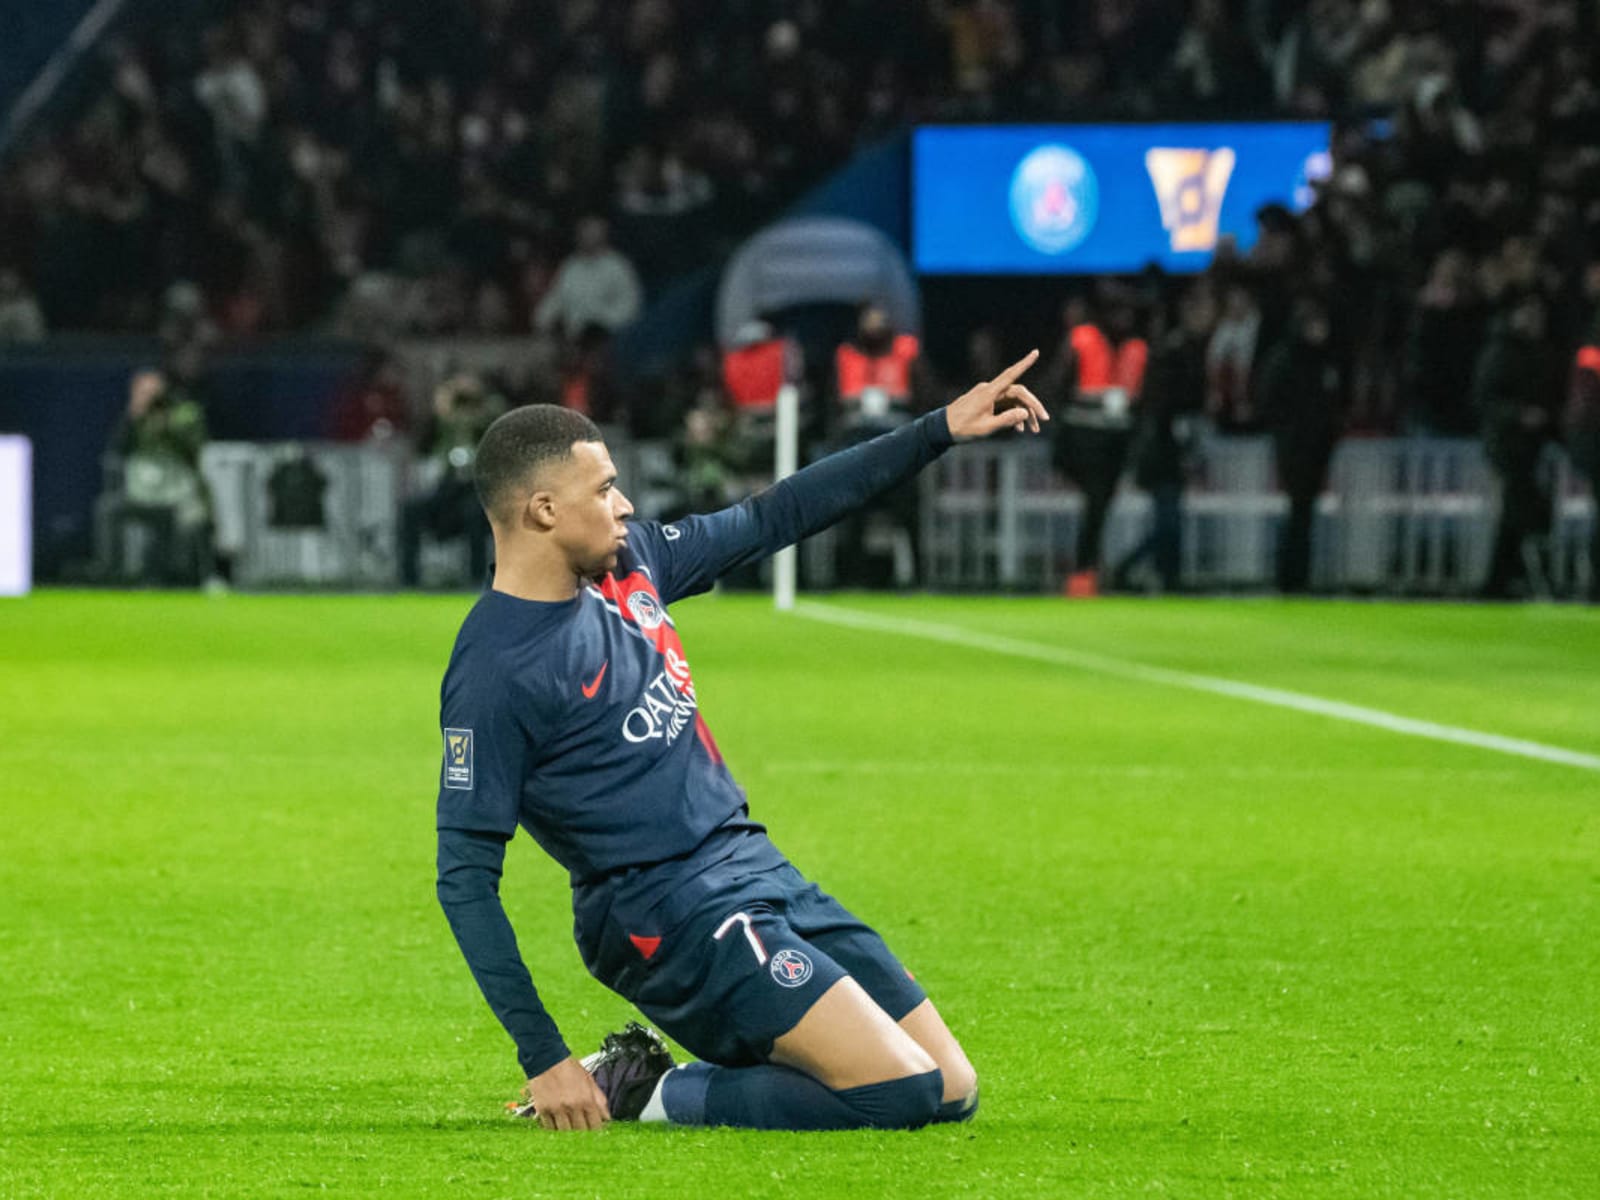 Paris Saint-Germain 2-0 Toulouse: Kylian Mbappe nets fine goal as